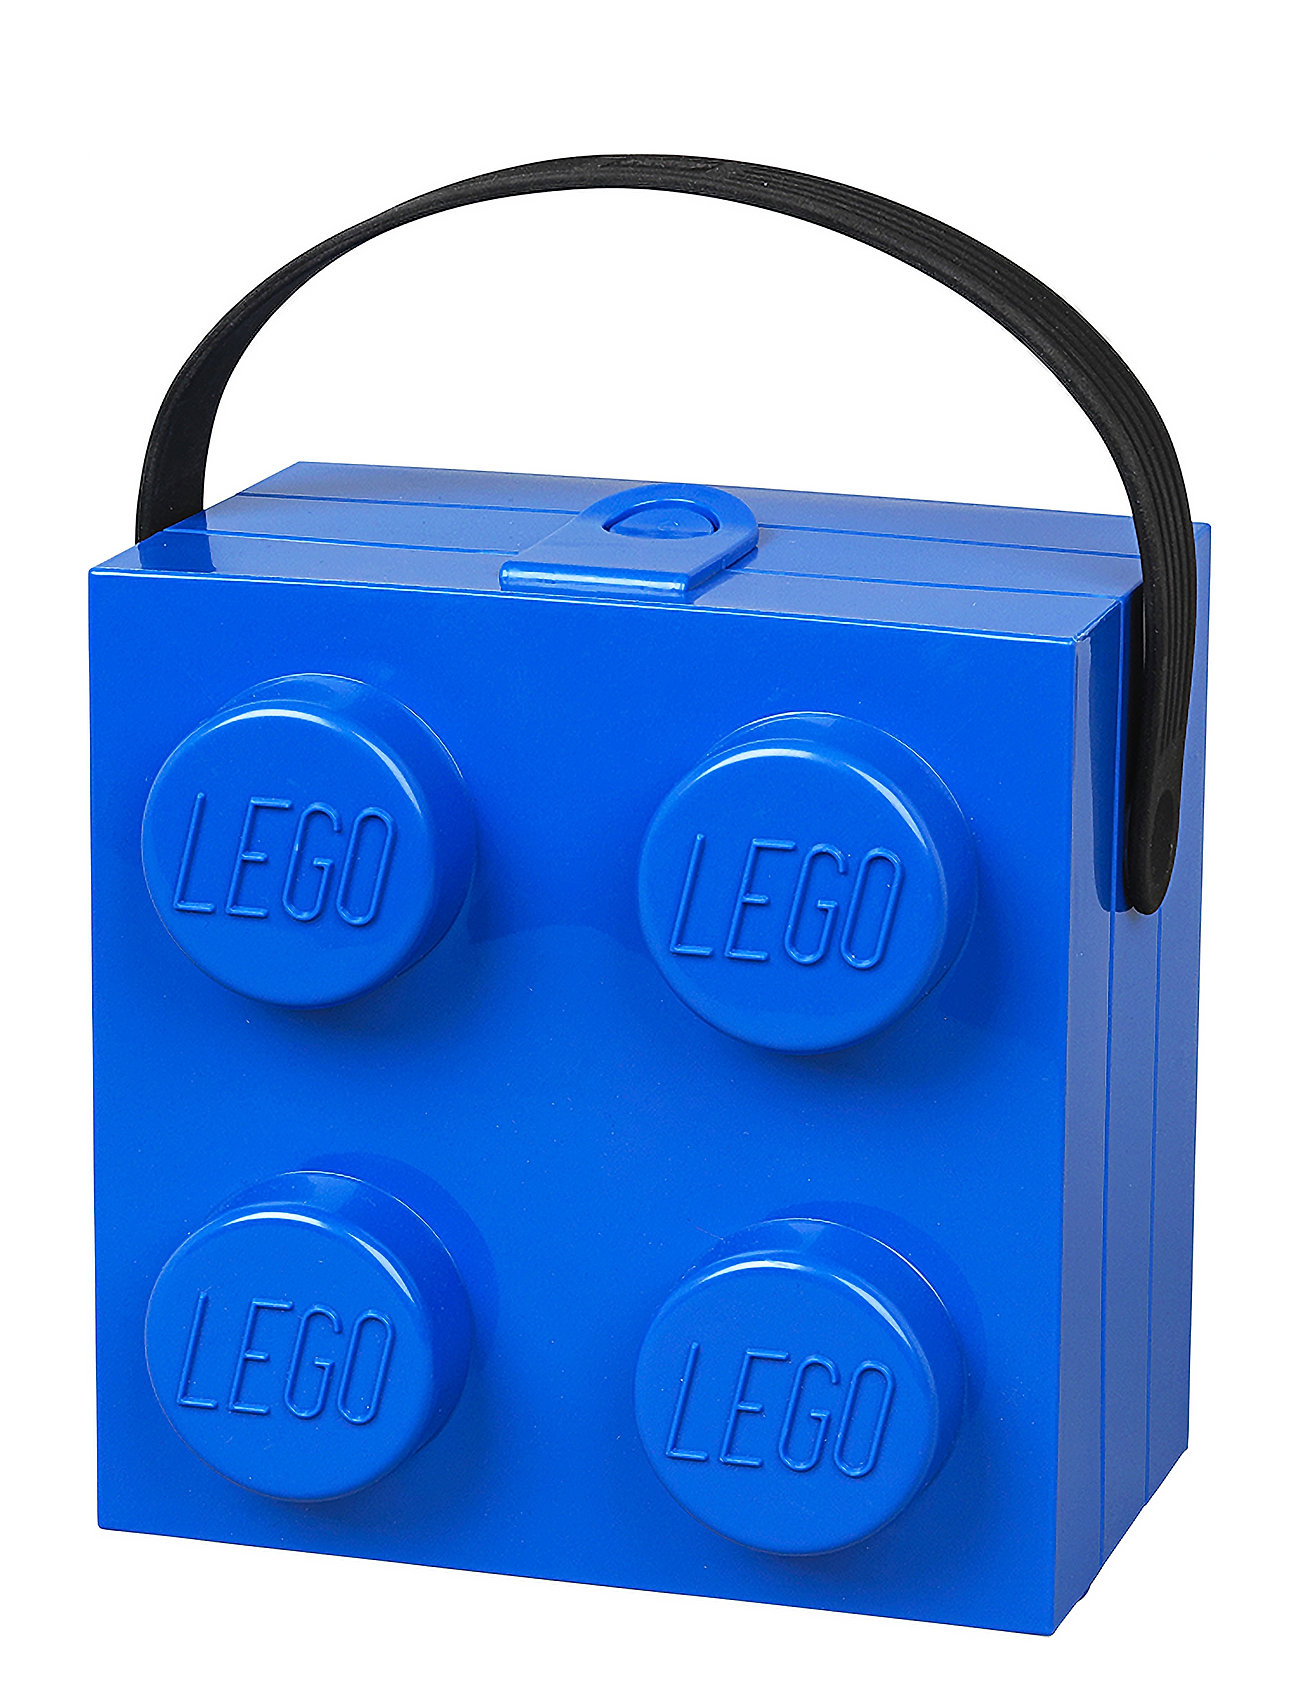 Box W. Handle  - Classic Home Kids Decor Storage Storage Boxes Blue LEGO STORAGE